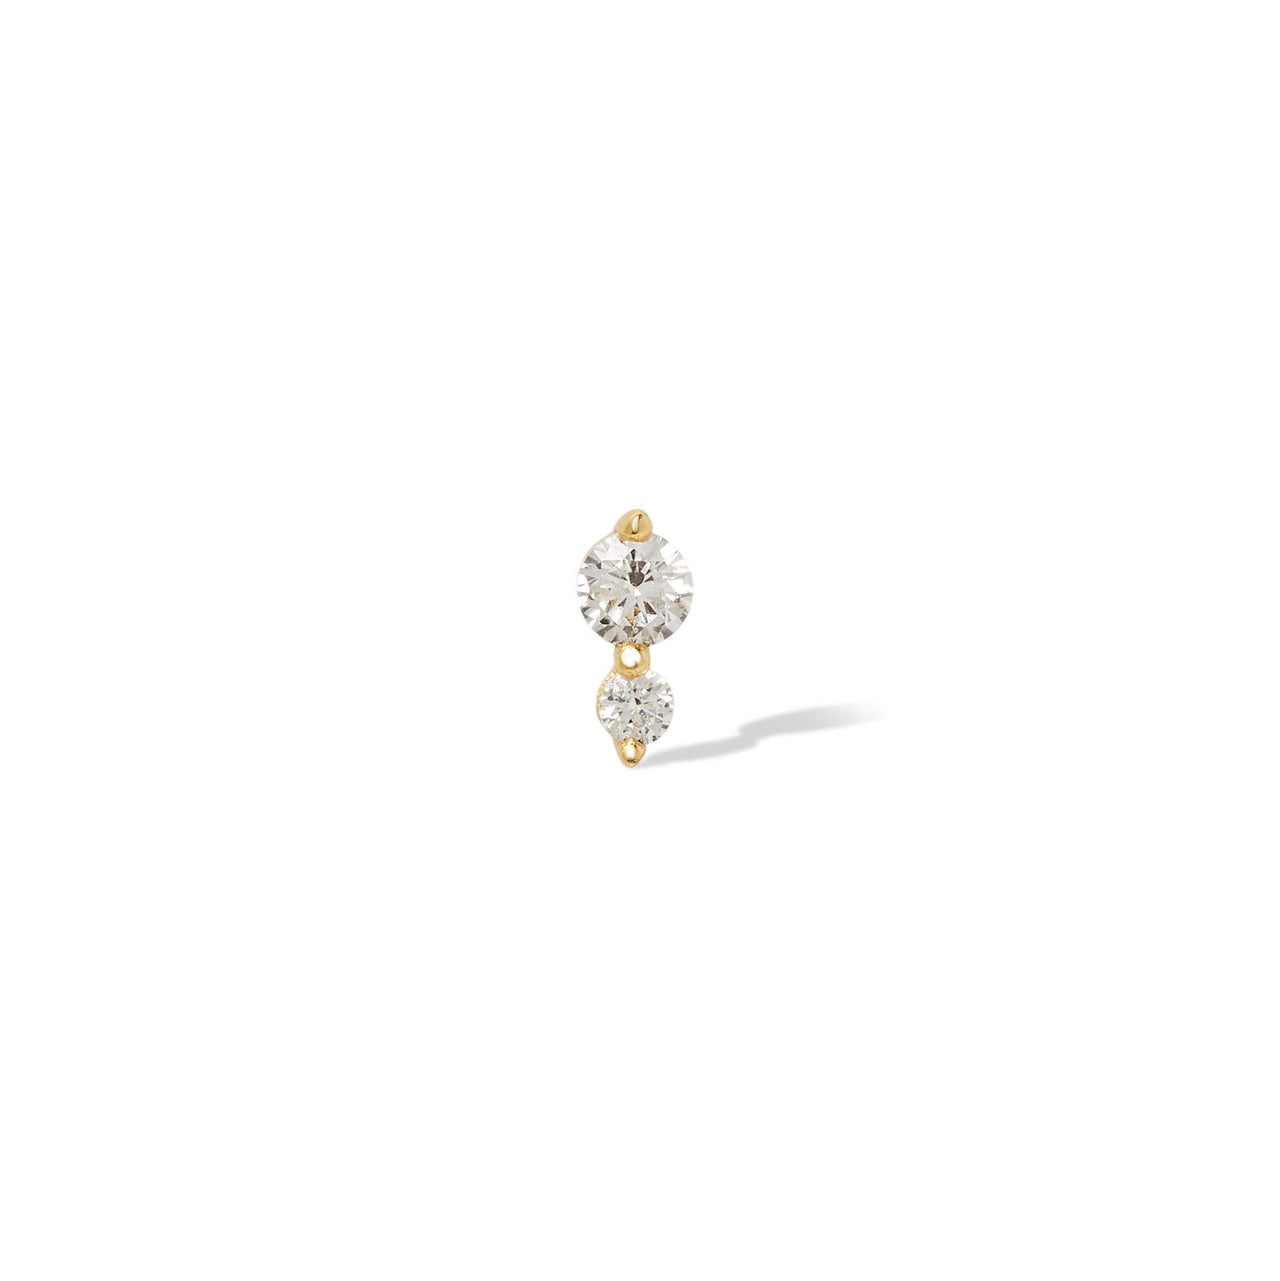 Single earring "True Love" double dot gold vermeil stud